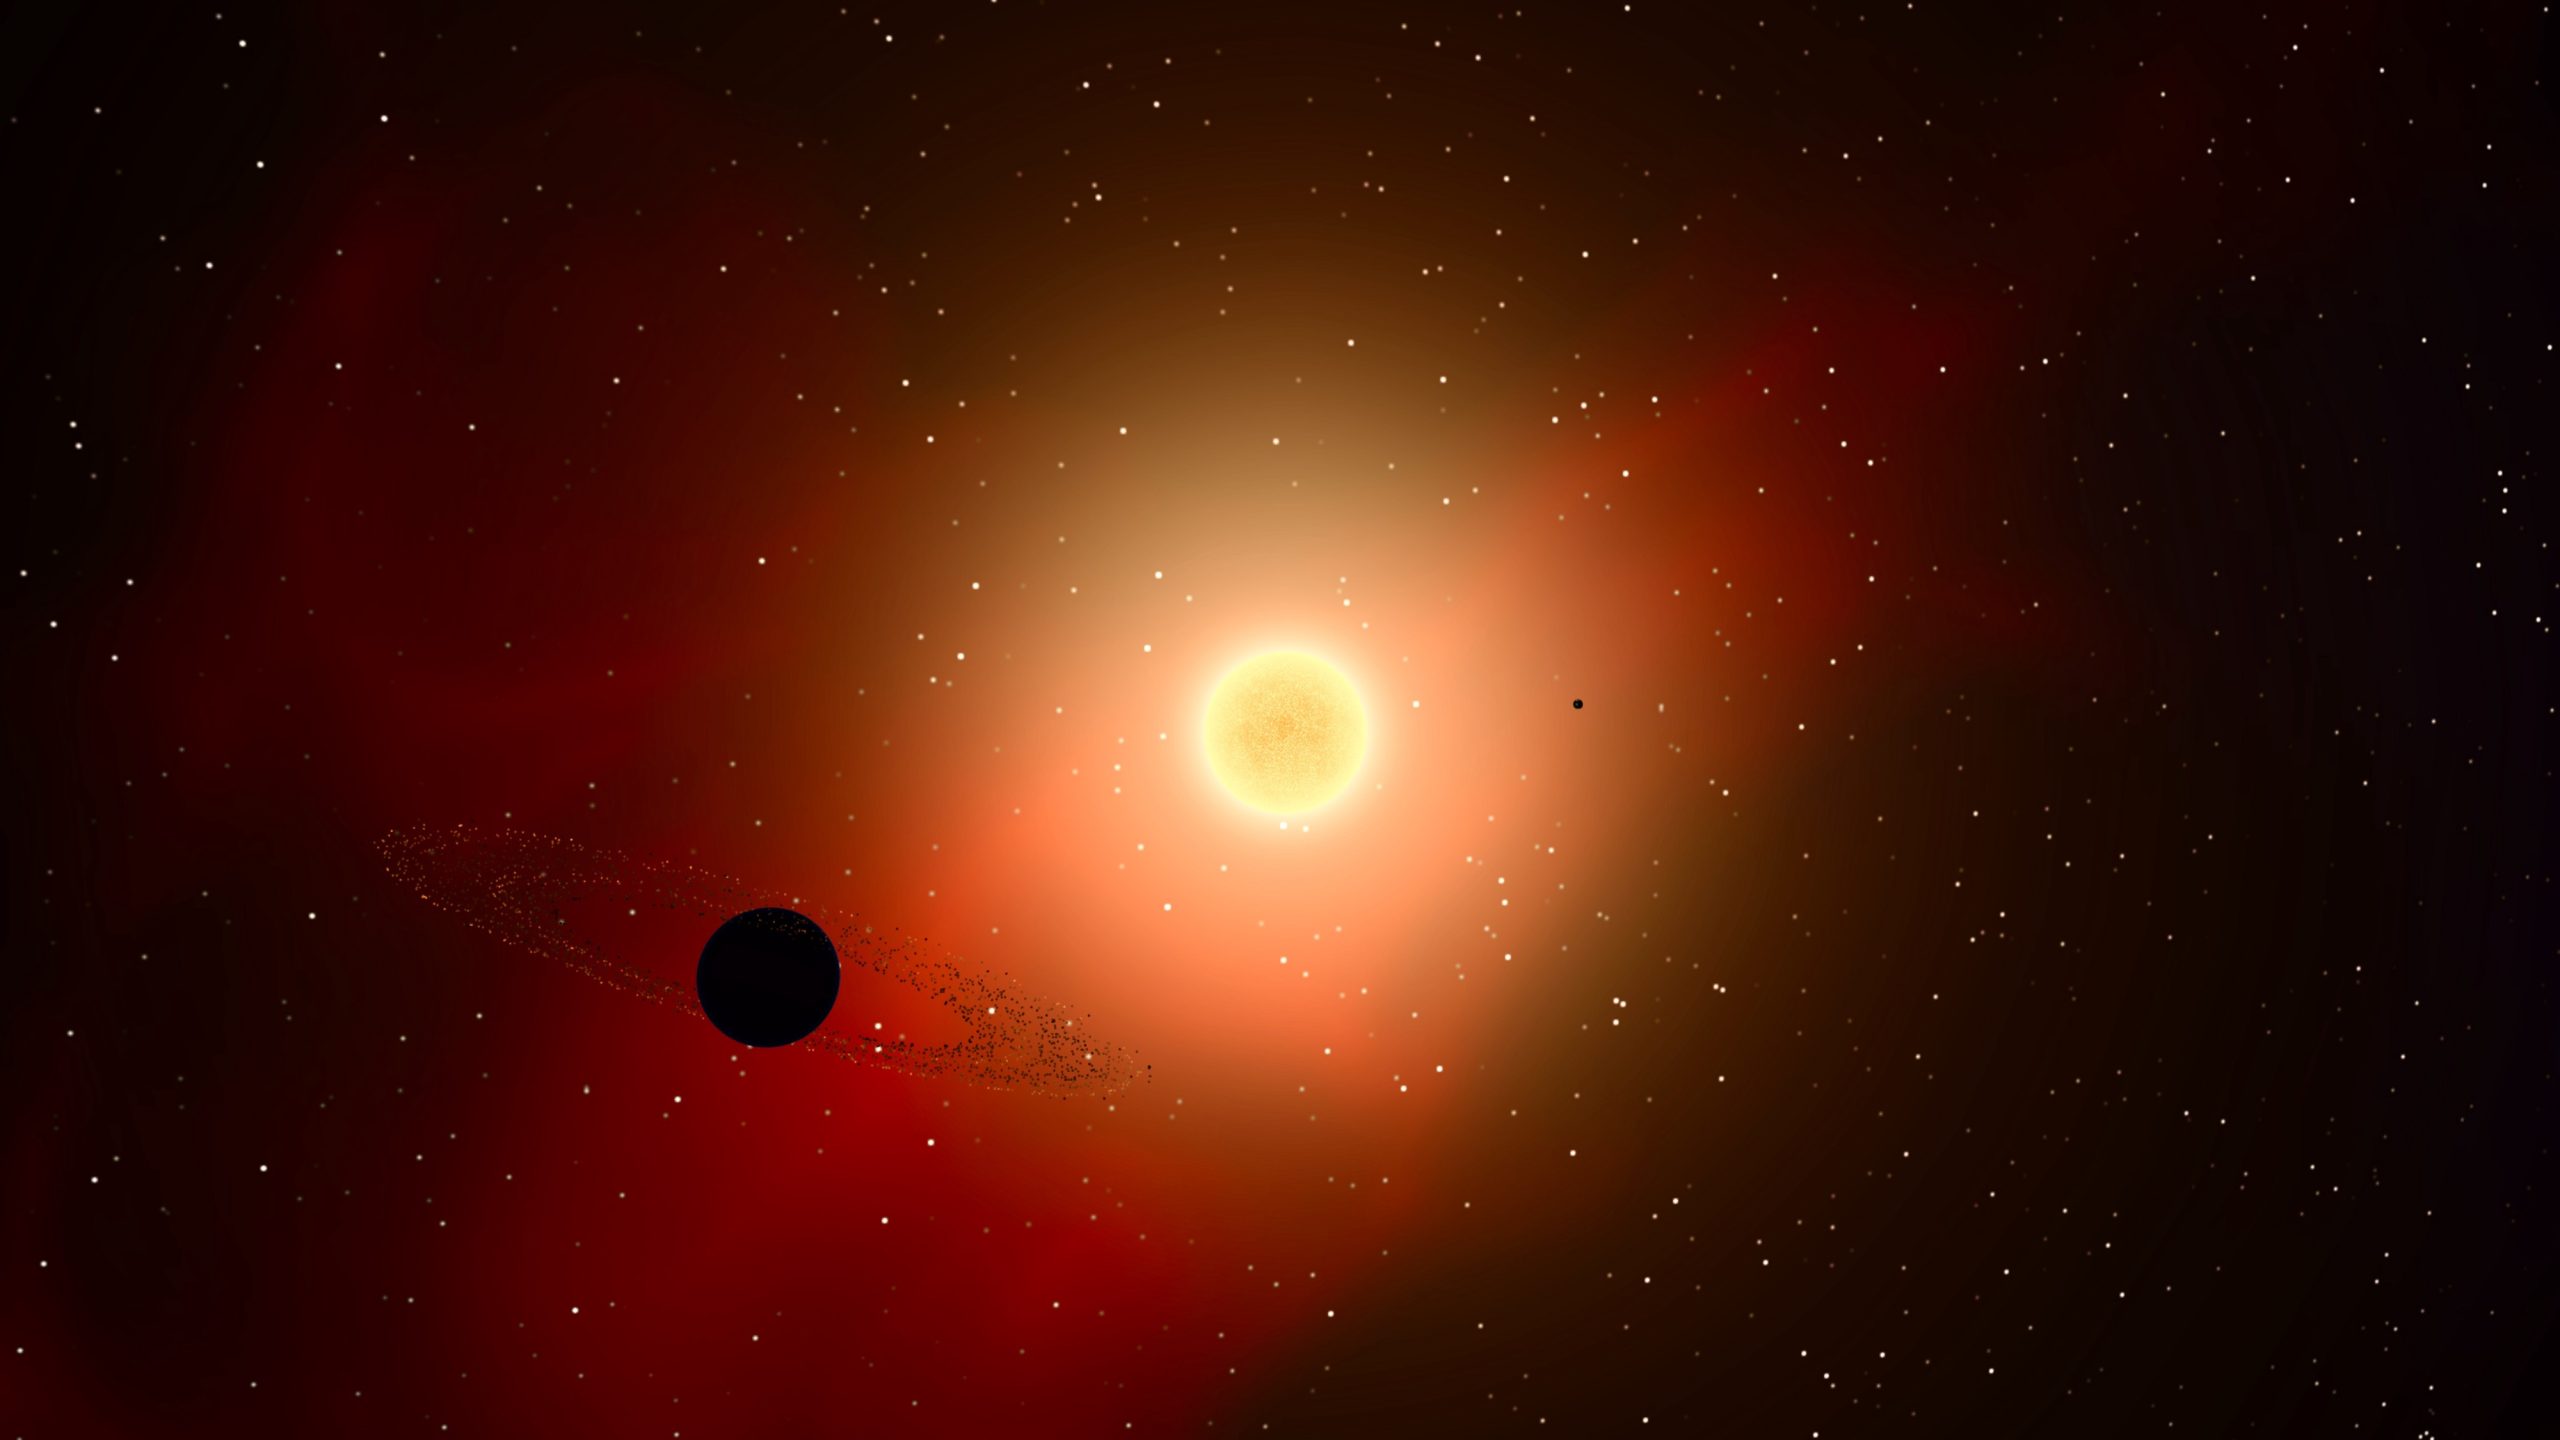 Υπάρχουν εξωγήινοι σε «γειτονικό» αστρικό σύστημα; – Το μυστηριώδες ραδιο-σήμα που φούντωσε τα σενάρια (φώτο)